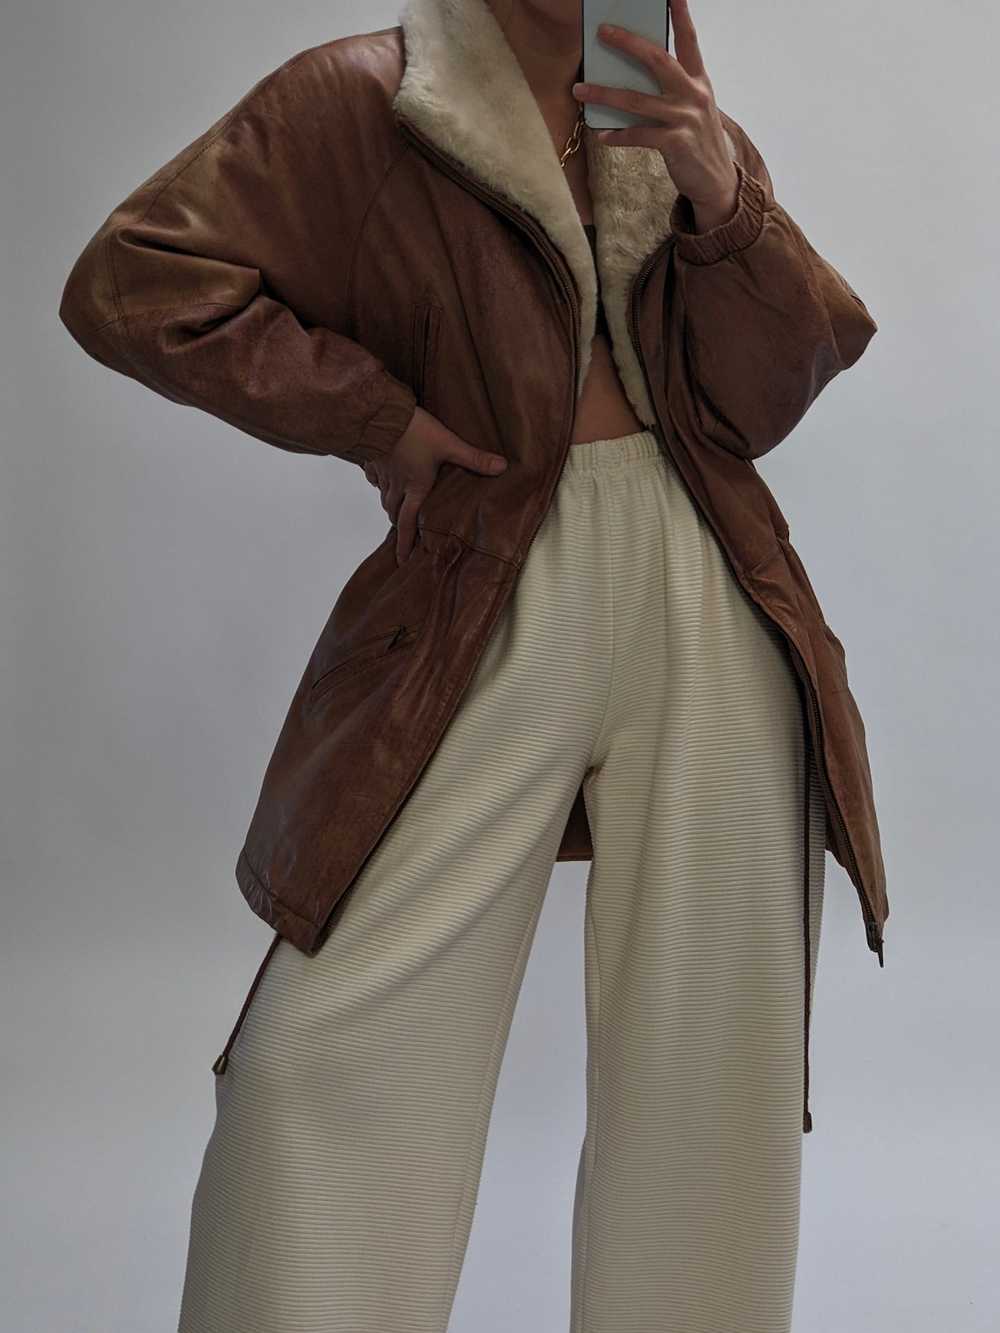 Rare Vintage Leather & Faux Fur Zip Coat - image 5